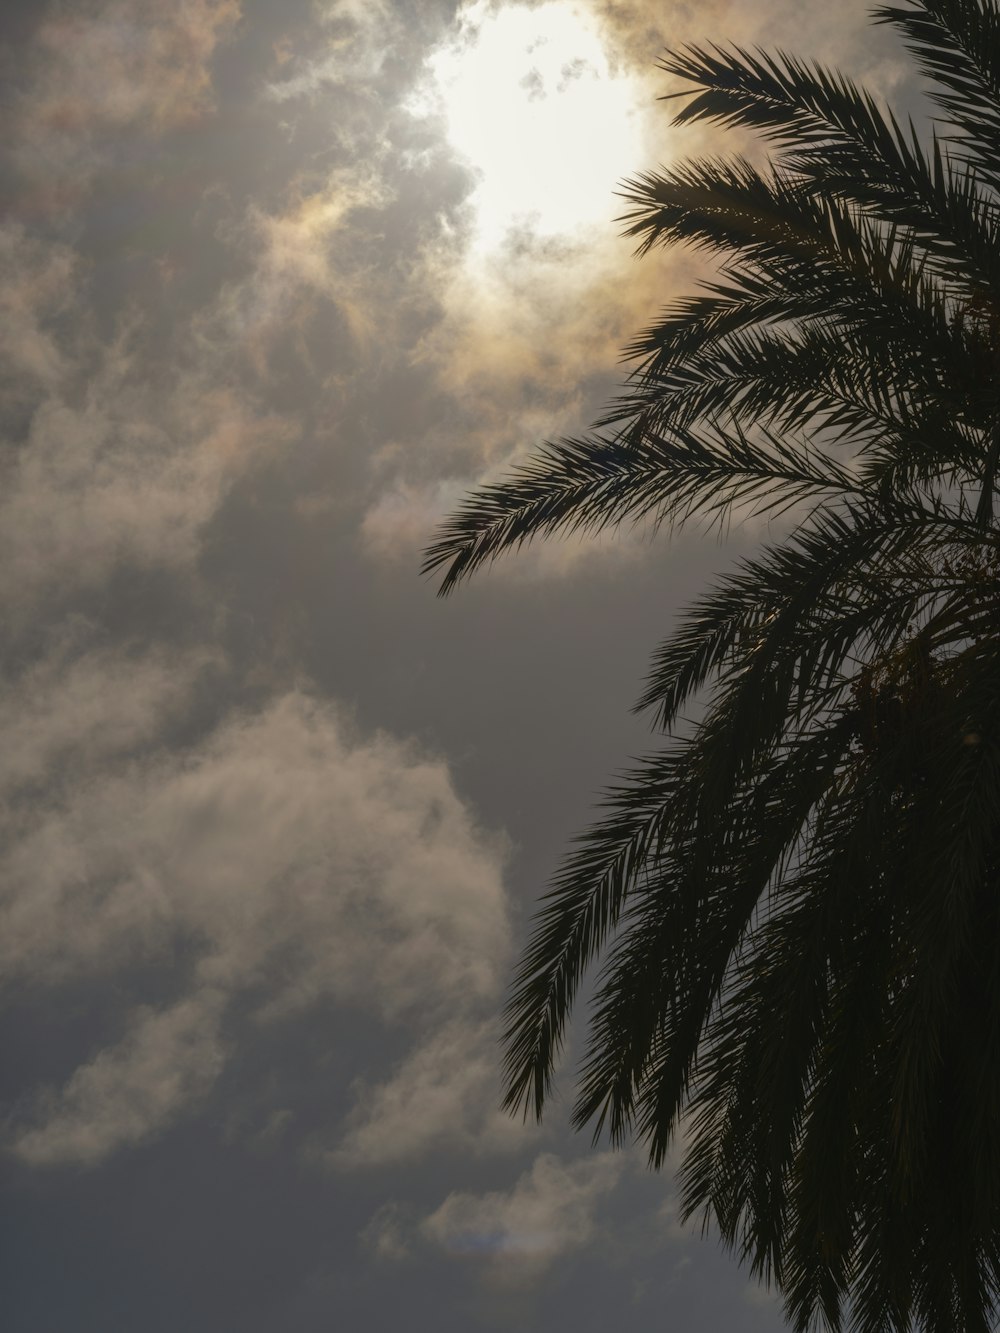 Il sole splende tra le nuvole dietro una palma